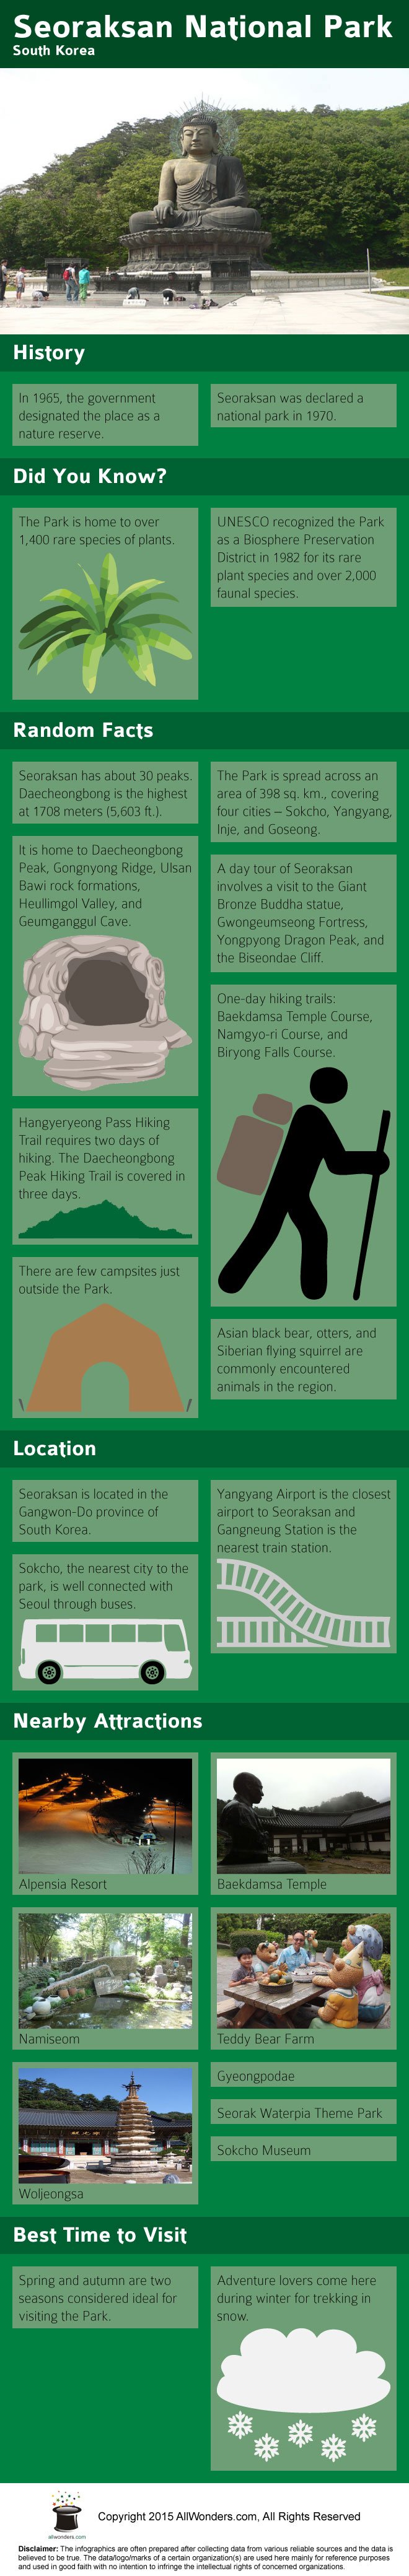 Seoraksan National Park Infographic